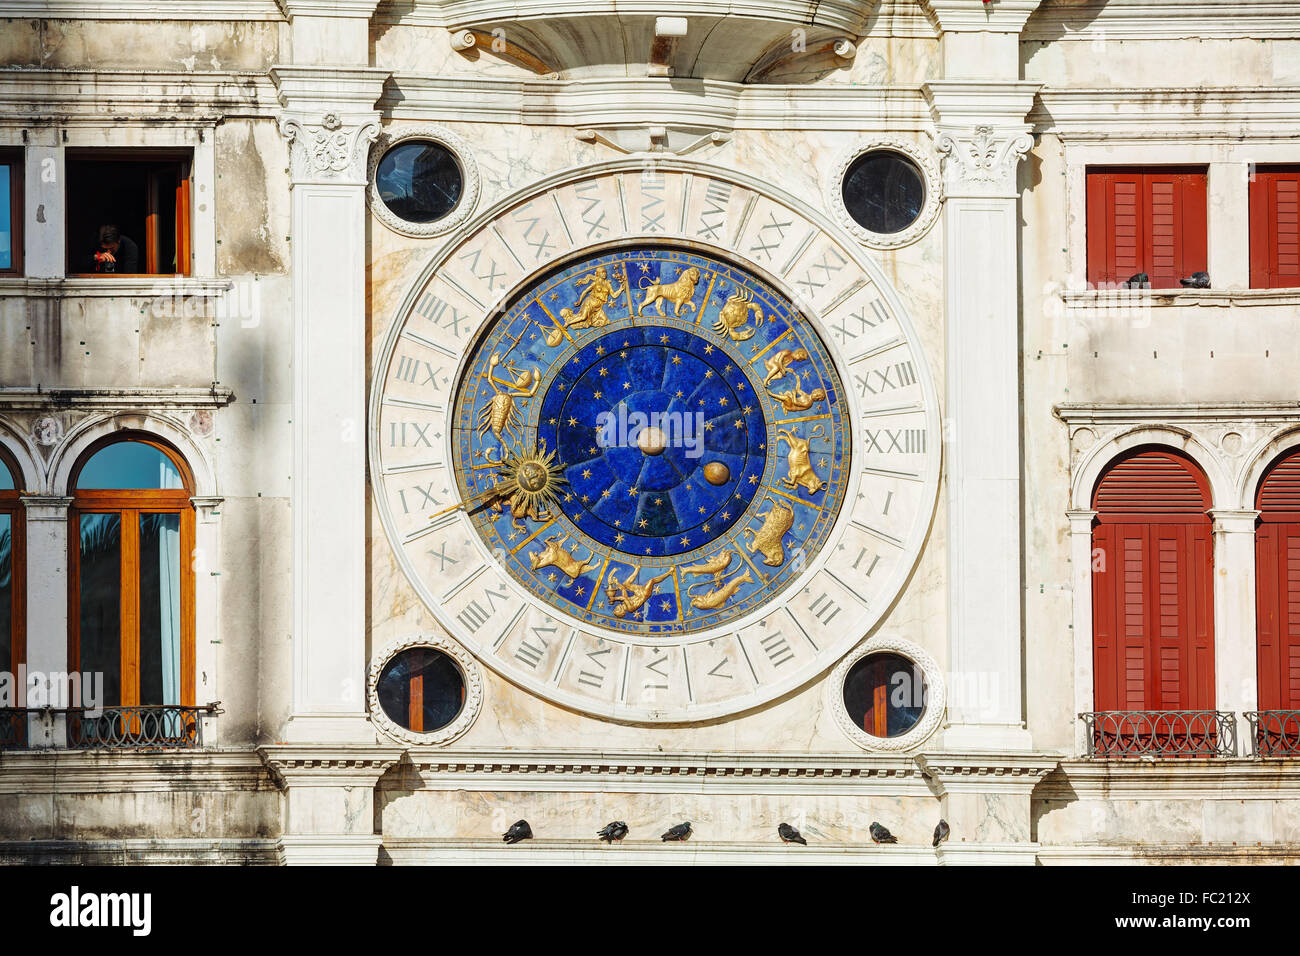 Orologio Astrologico del Torre dell'Orologio a Venezia, Italia Foto Stock